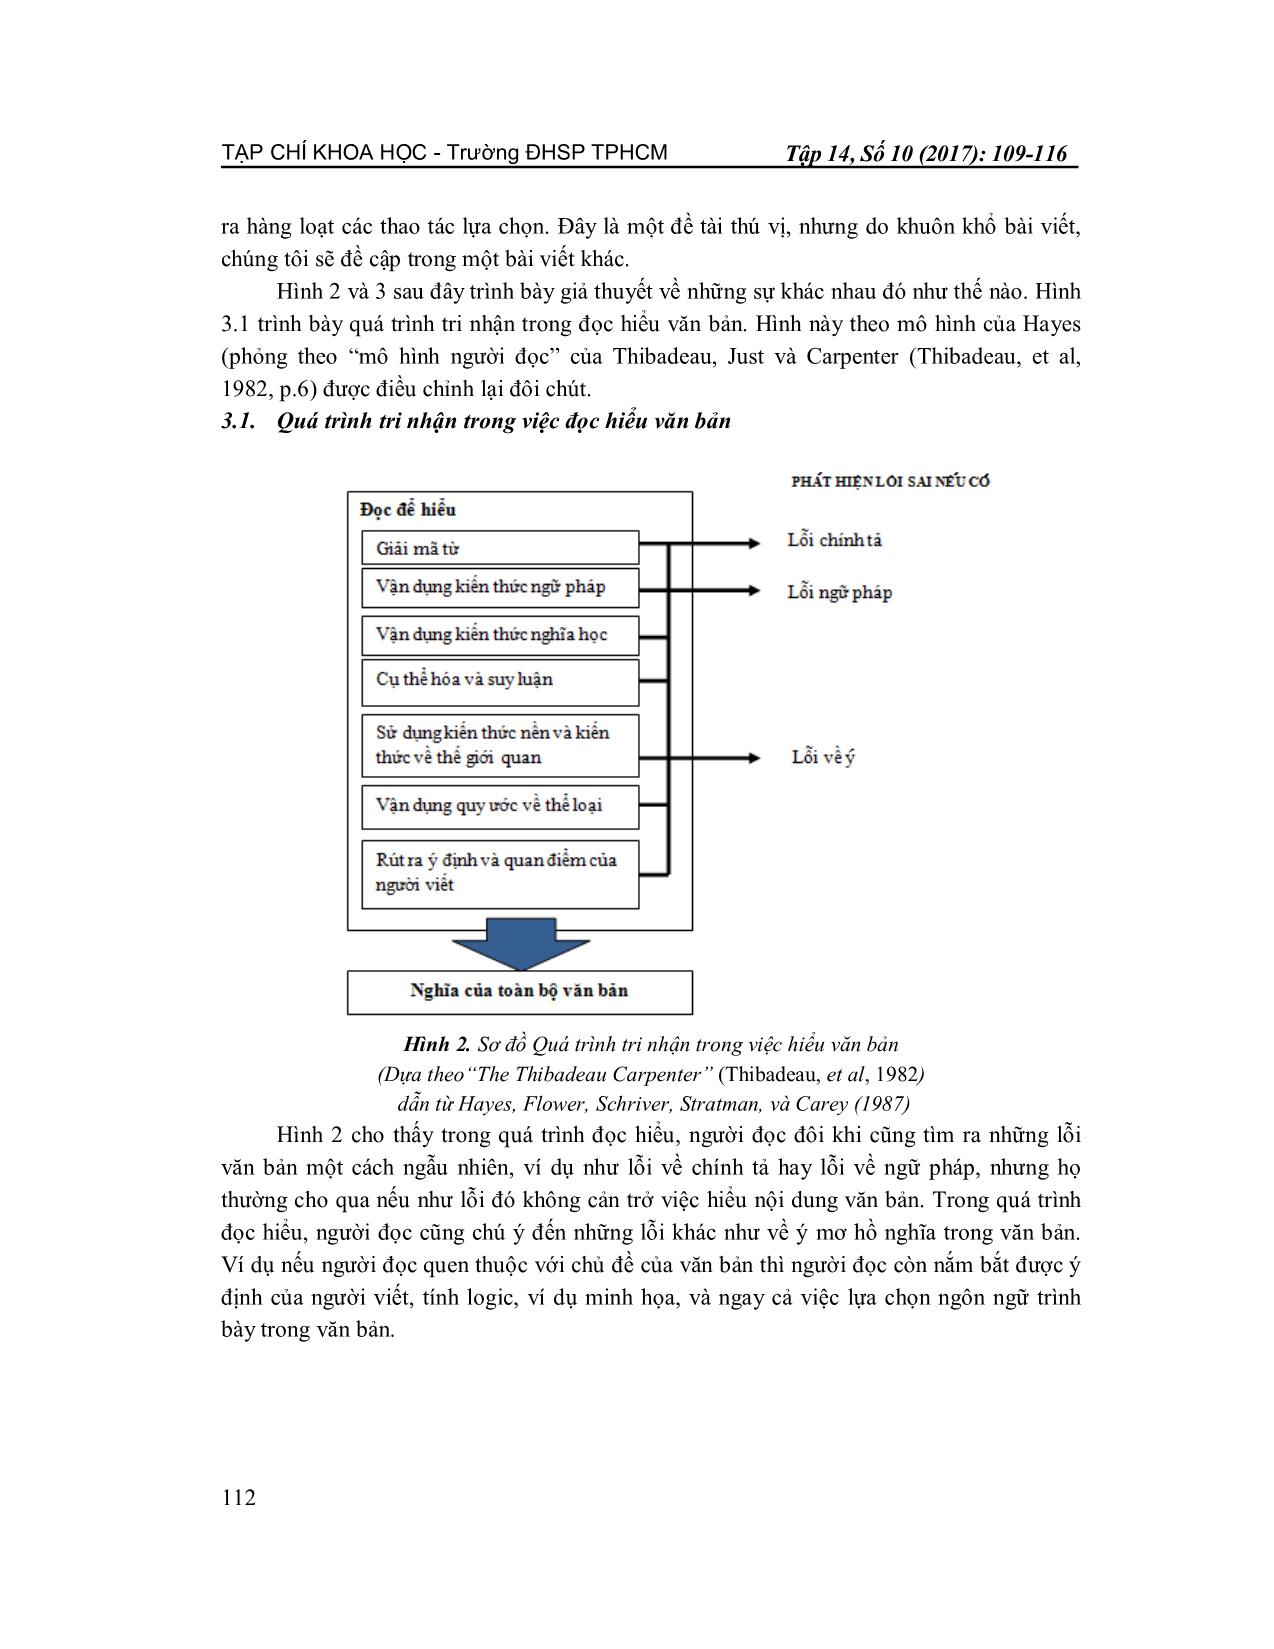 Quá trình tri nhận trong việc tự kiểm tra lại bài luận tiếng Anh học thuật trang 4